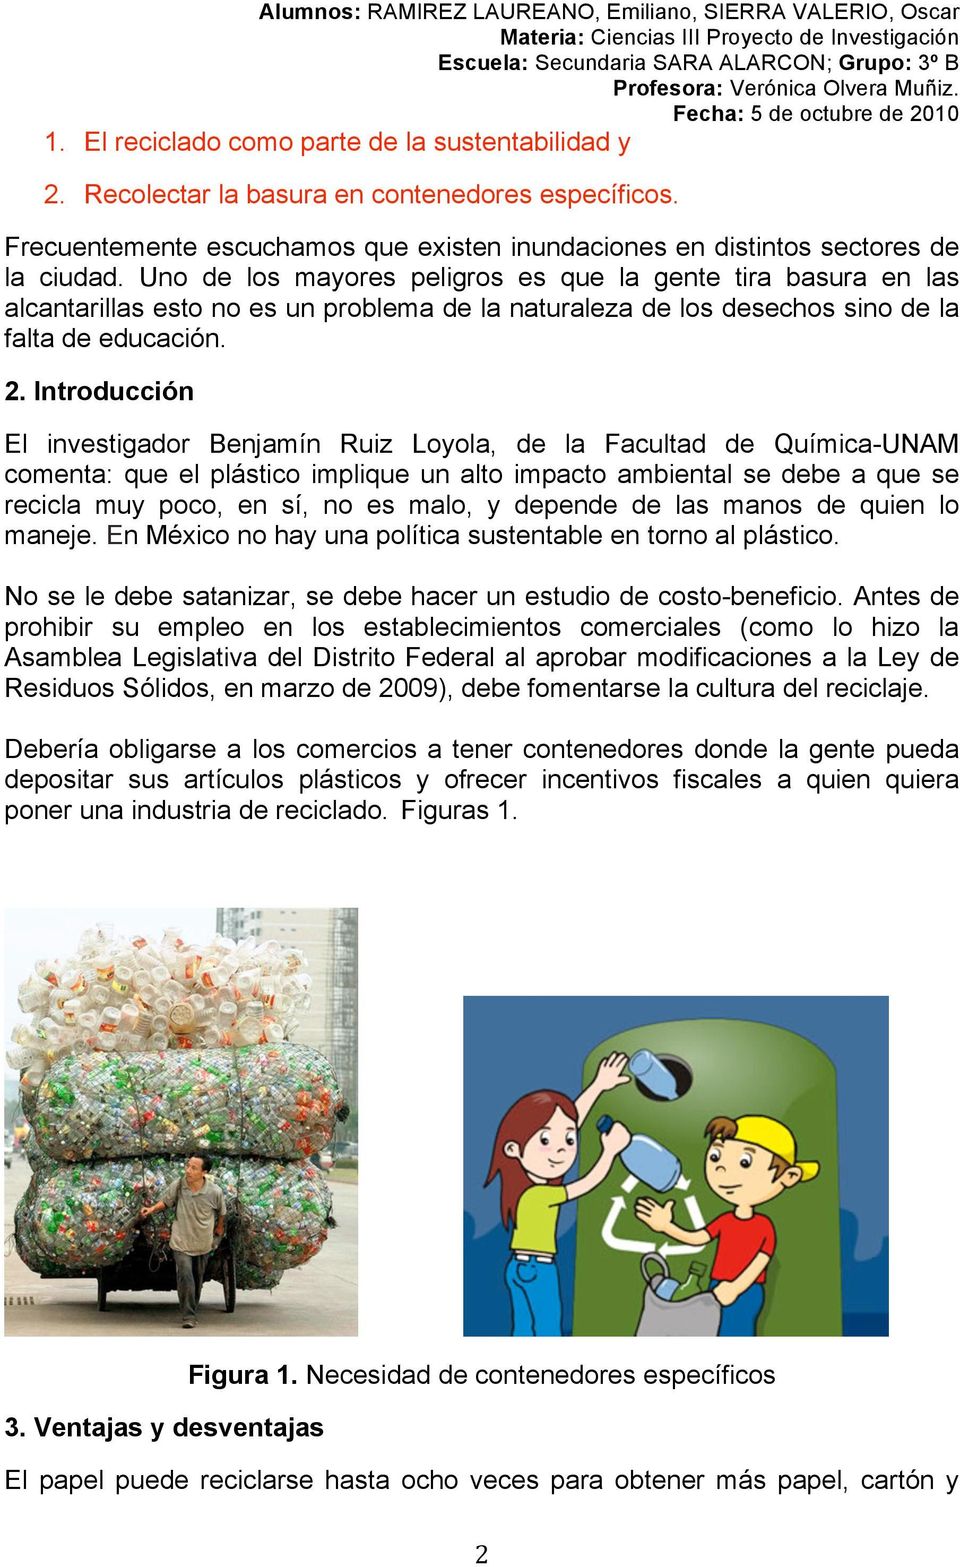 Introducción El investigador Benjamín Ruiz Loyola, de la Facultad de Química-UNAM comenta: que el plástico implique un alto impacto ambiental se debe a que se recicla muy poco, en sí, no es malo, y